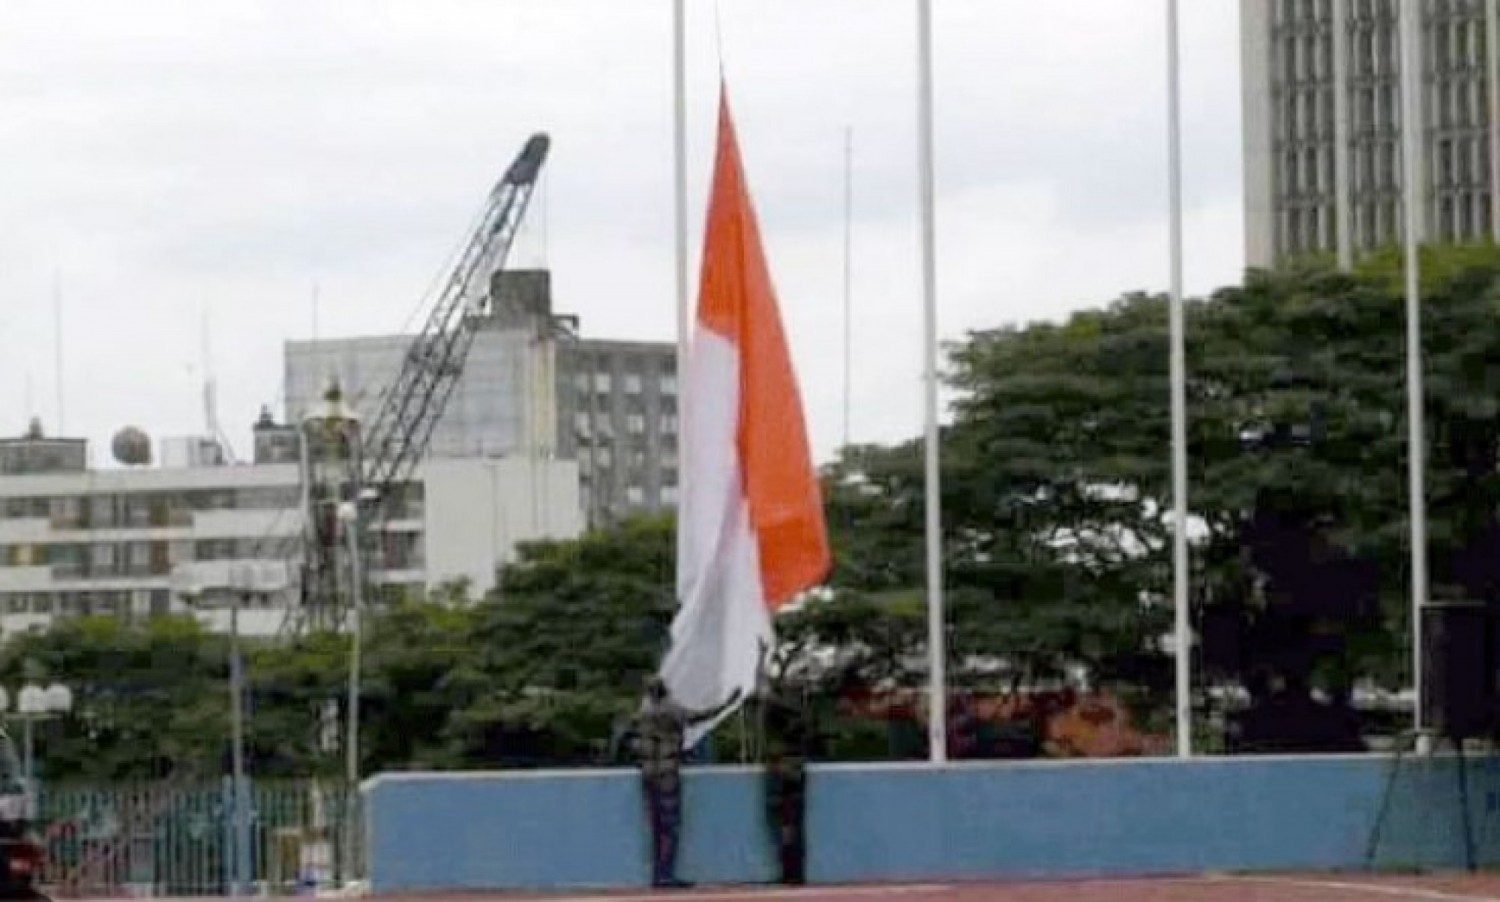 Côte d'Ivoire : Décès d'Henri Konan Bédié, le Chef de l'Etat décrète un deuil national de 10 jours, les drapeaux en berne dans le pays